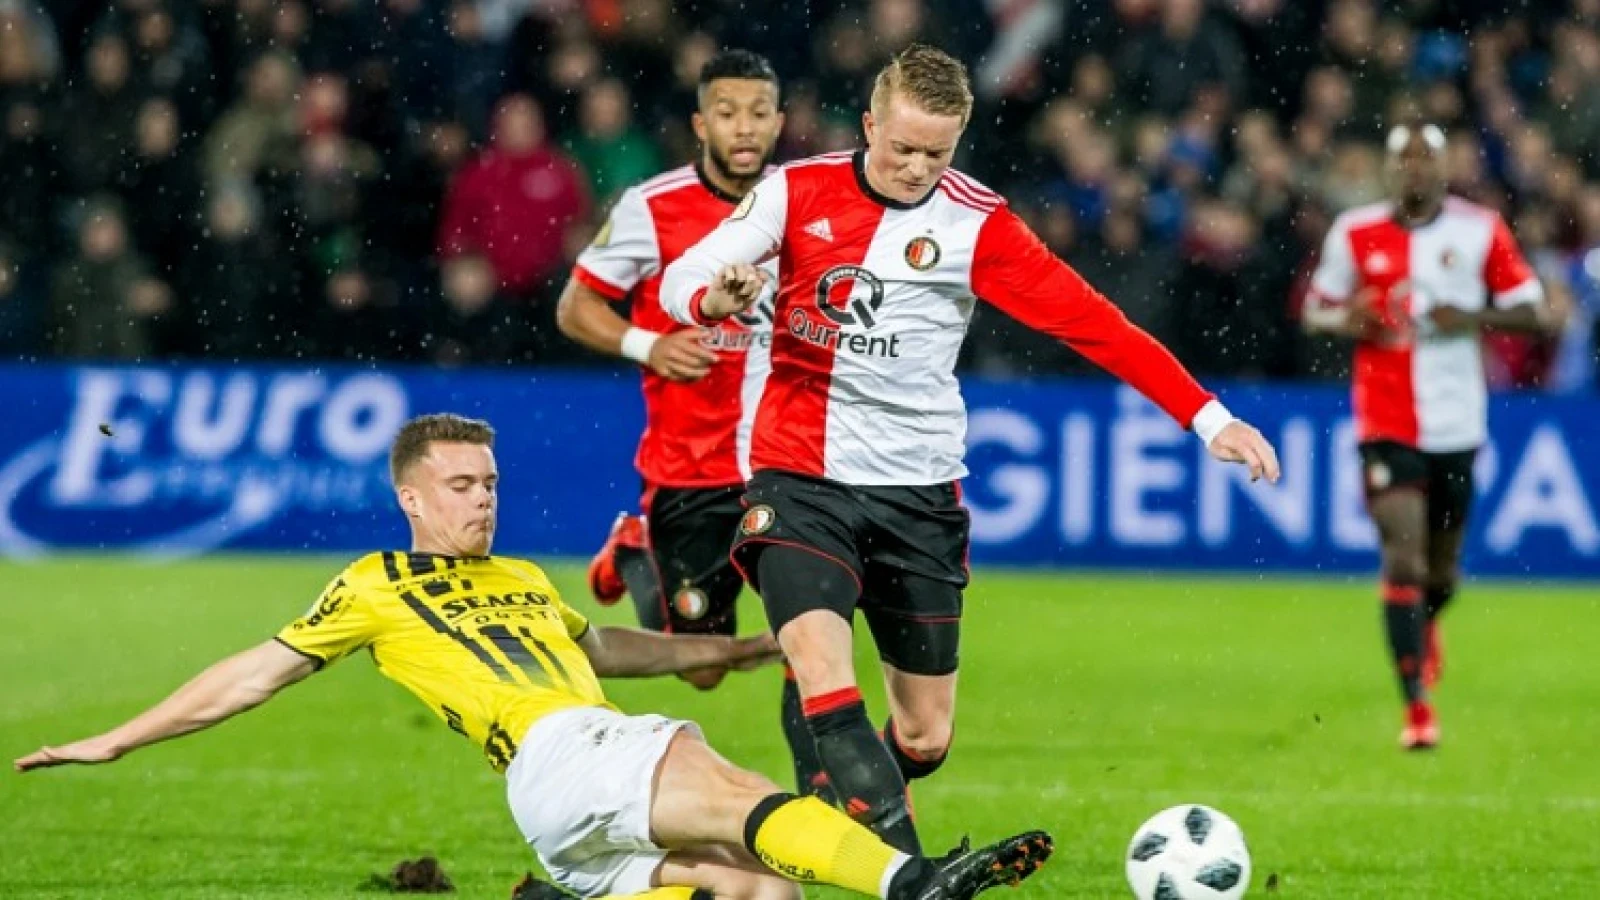 LIVE | Feyenoord - VVV-Venlo 1-1 | Einde wedstrijd